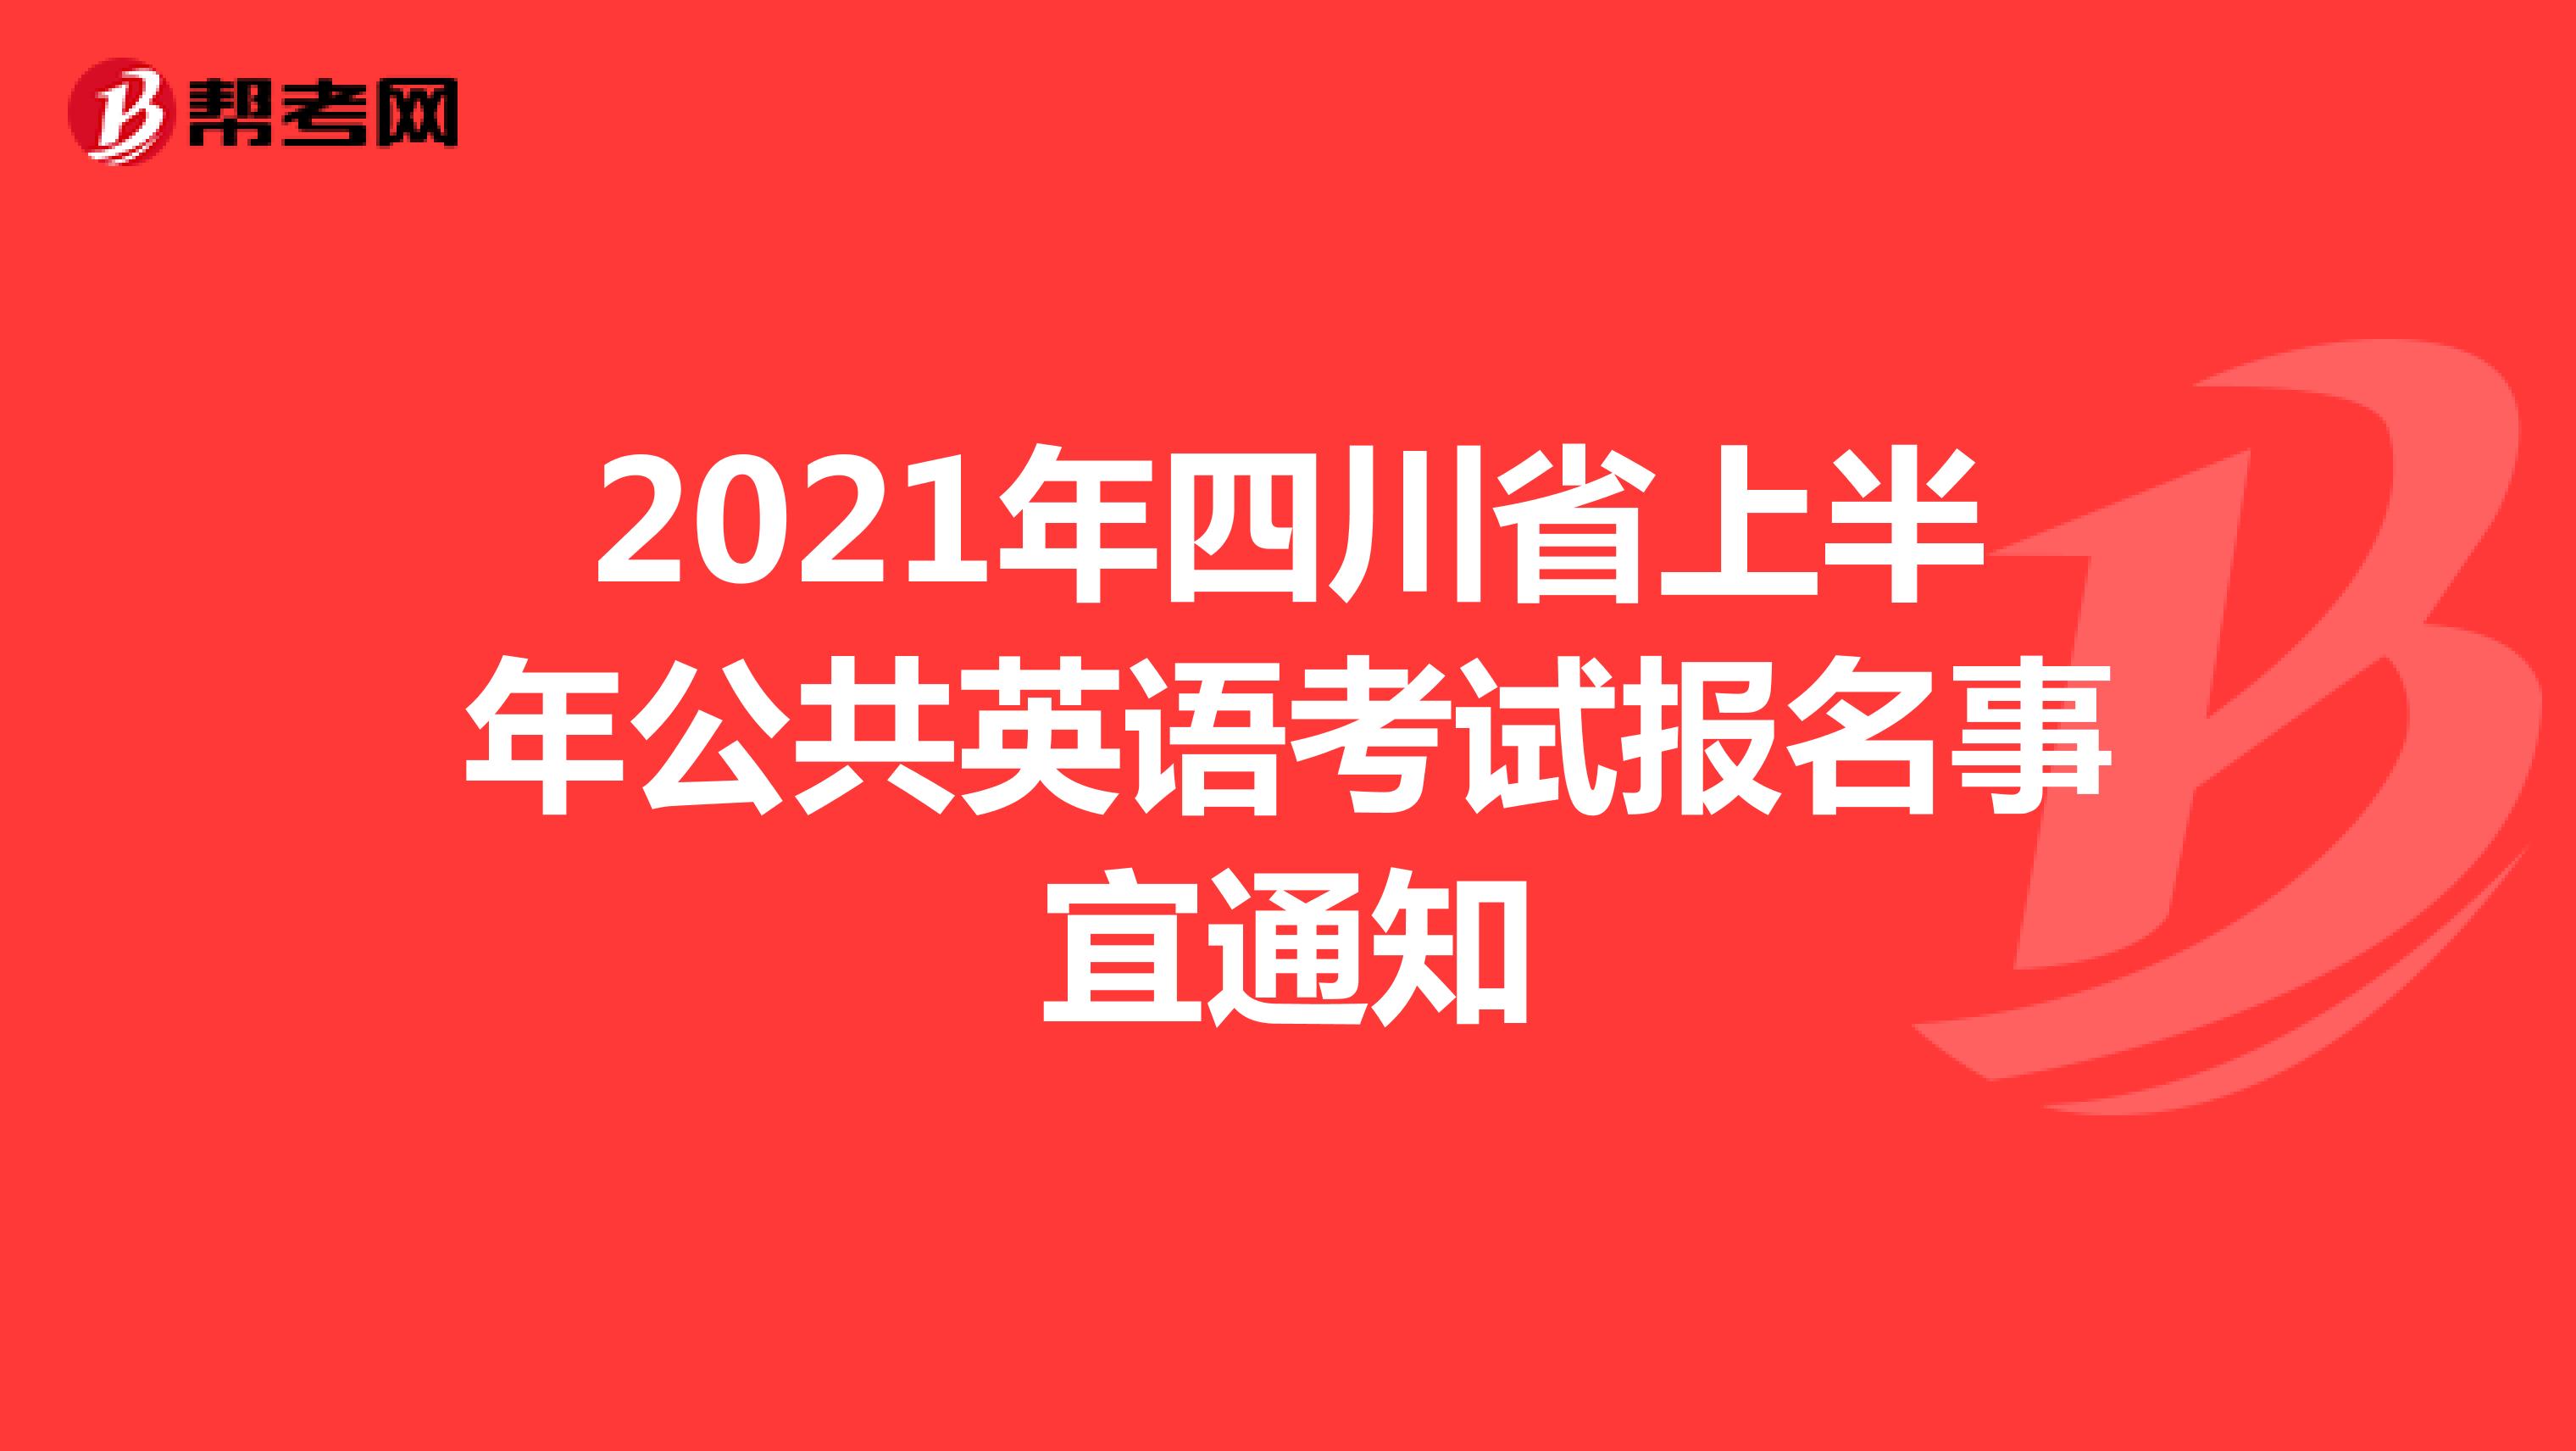 2021年四川省上半年公共英语考试报名事宜通知